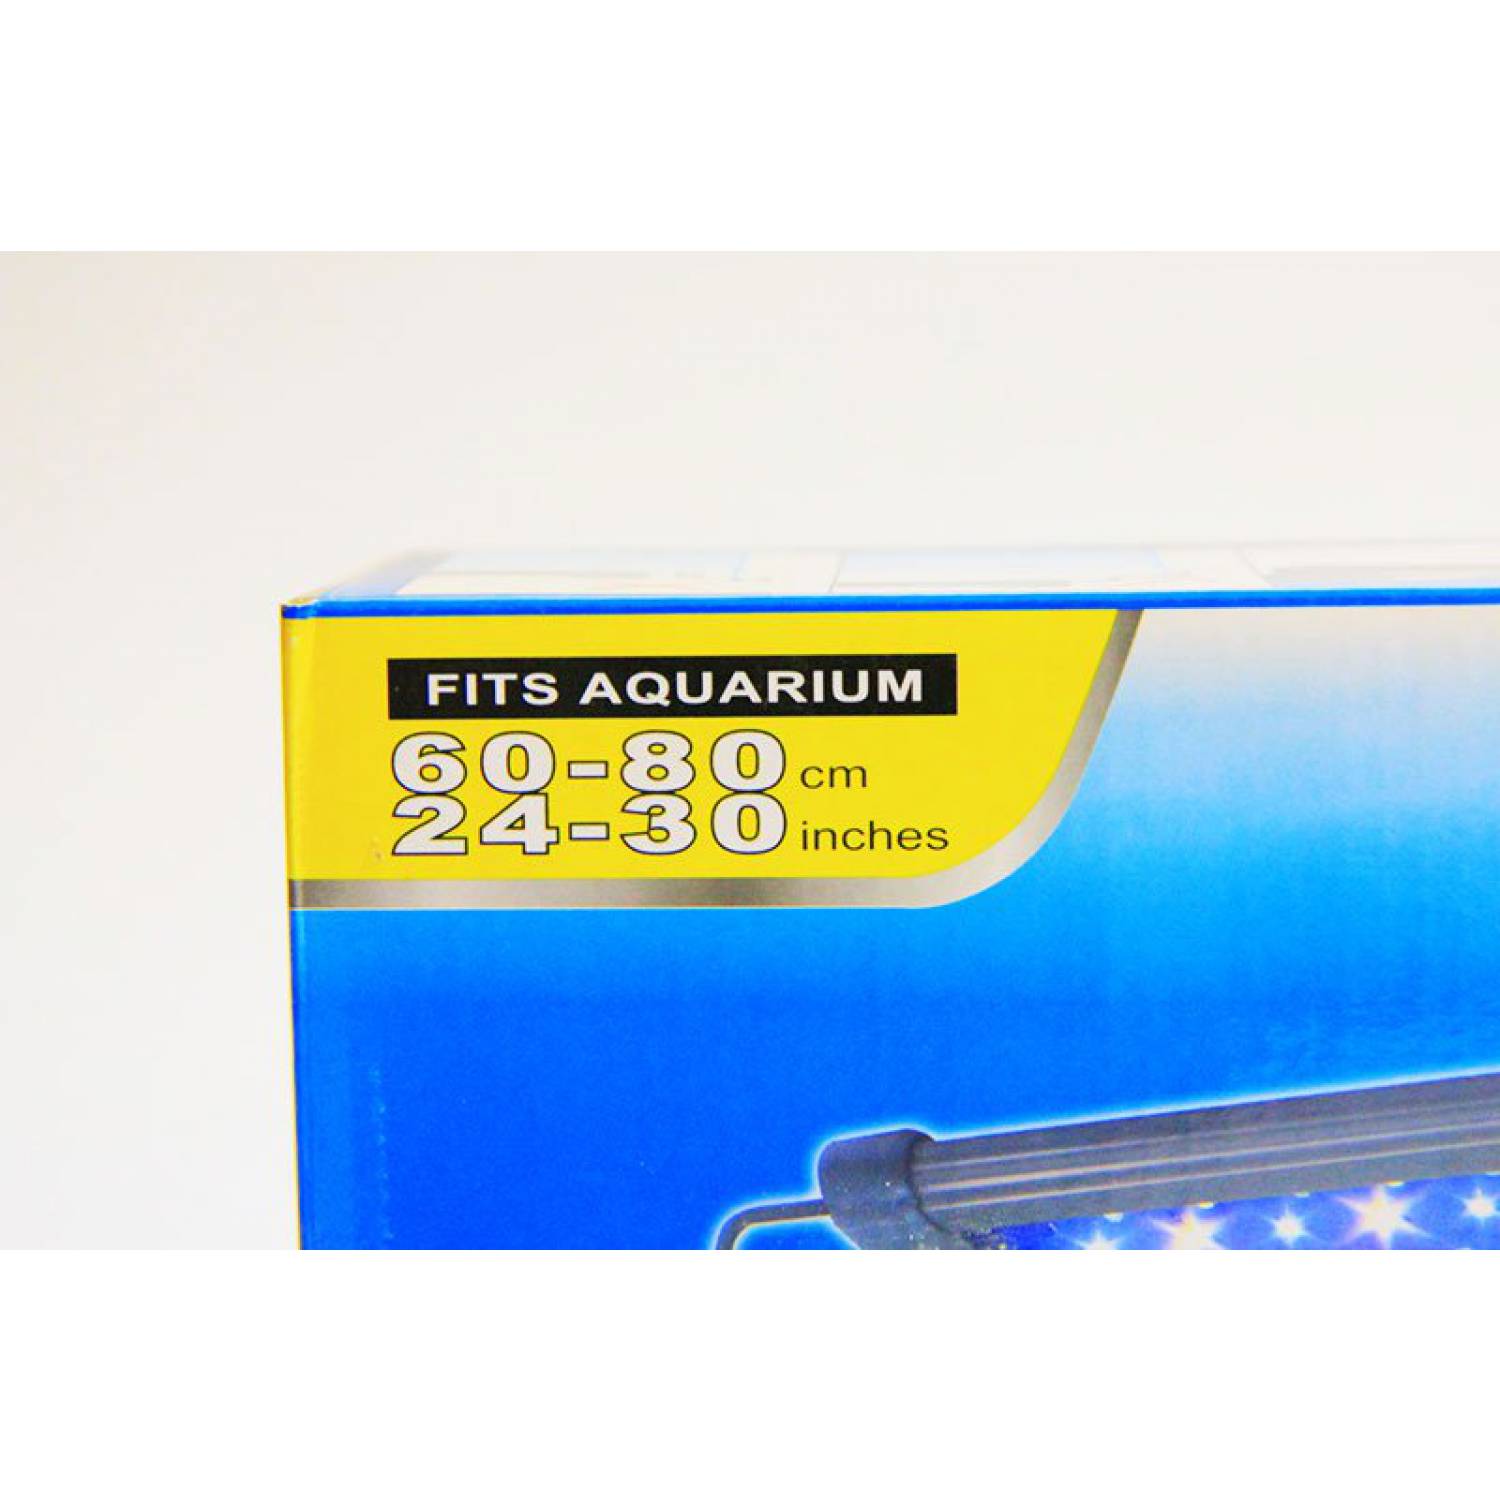 Лампа светодиодная для аквариума F001-60